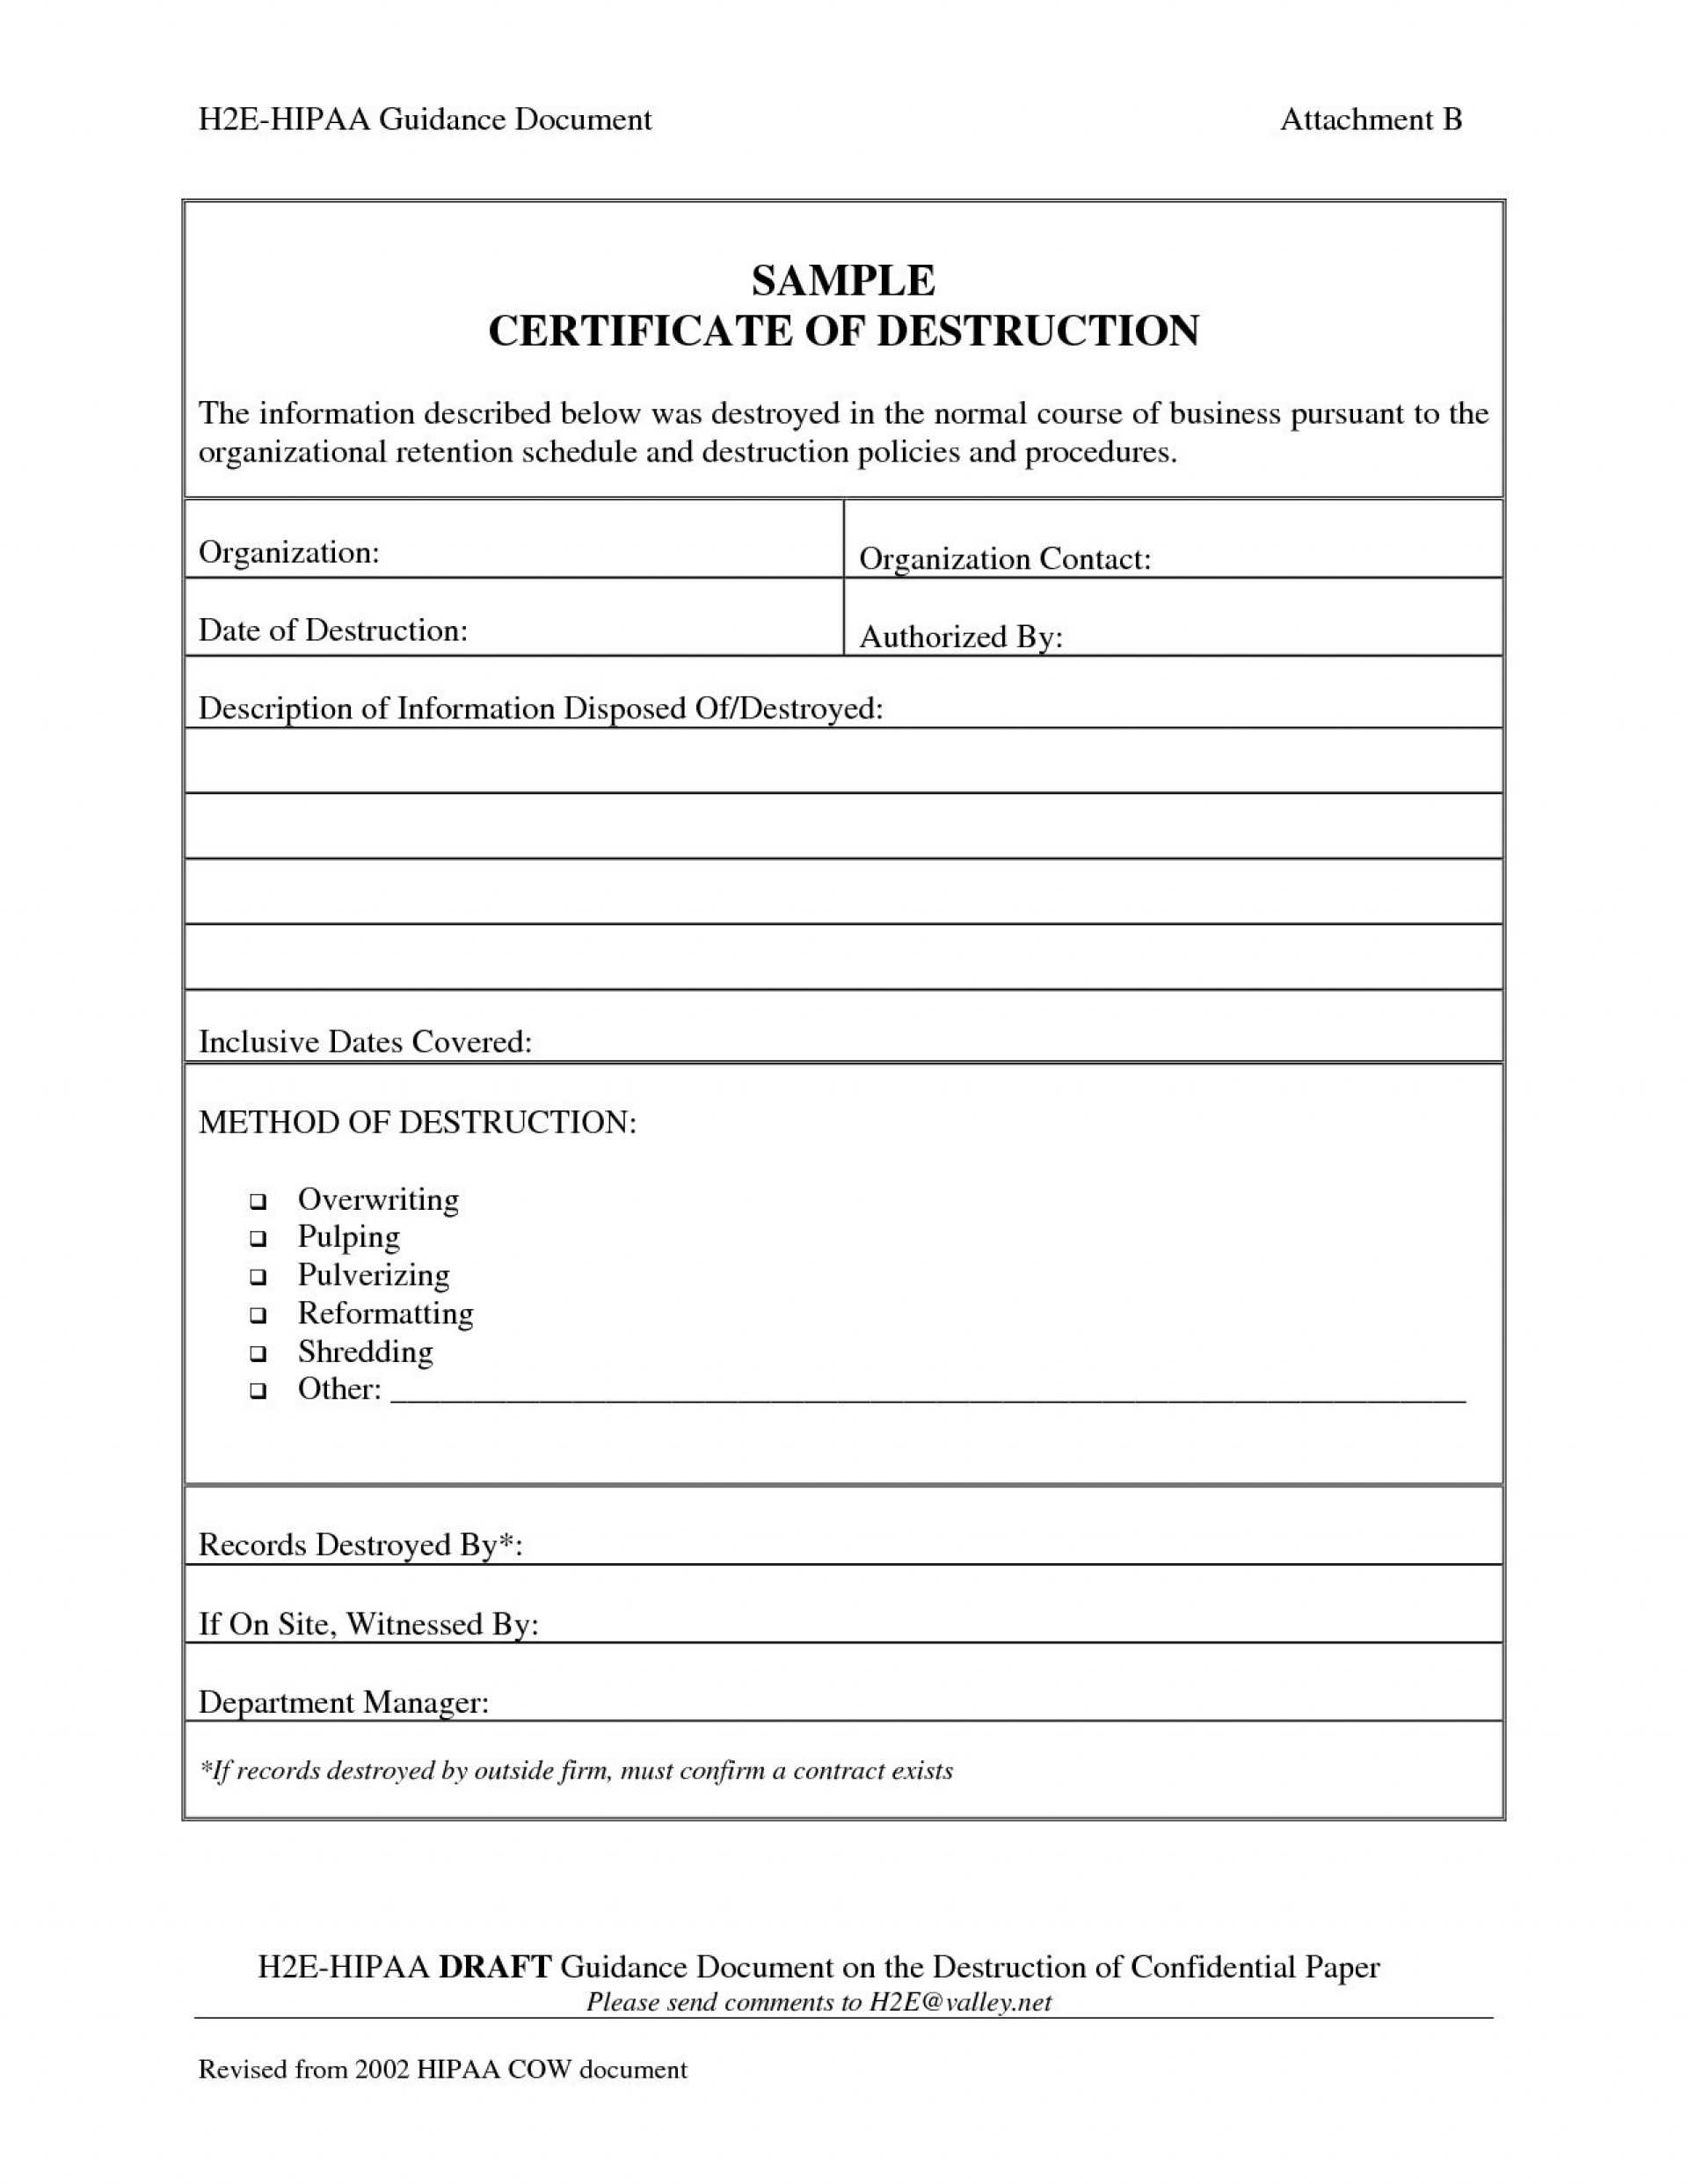 005 Certificate Of Destruction Template Ideas Exceptional Inside Free Certificate Of Destruction Template